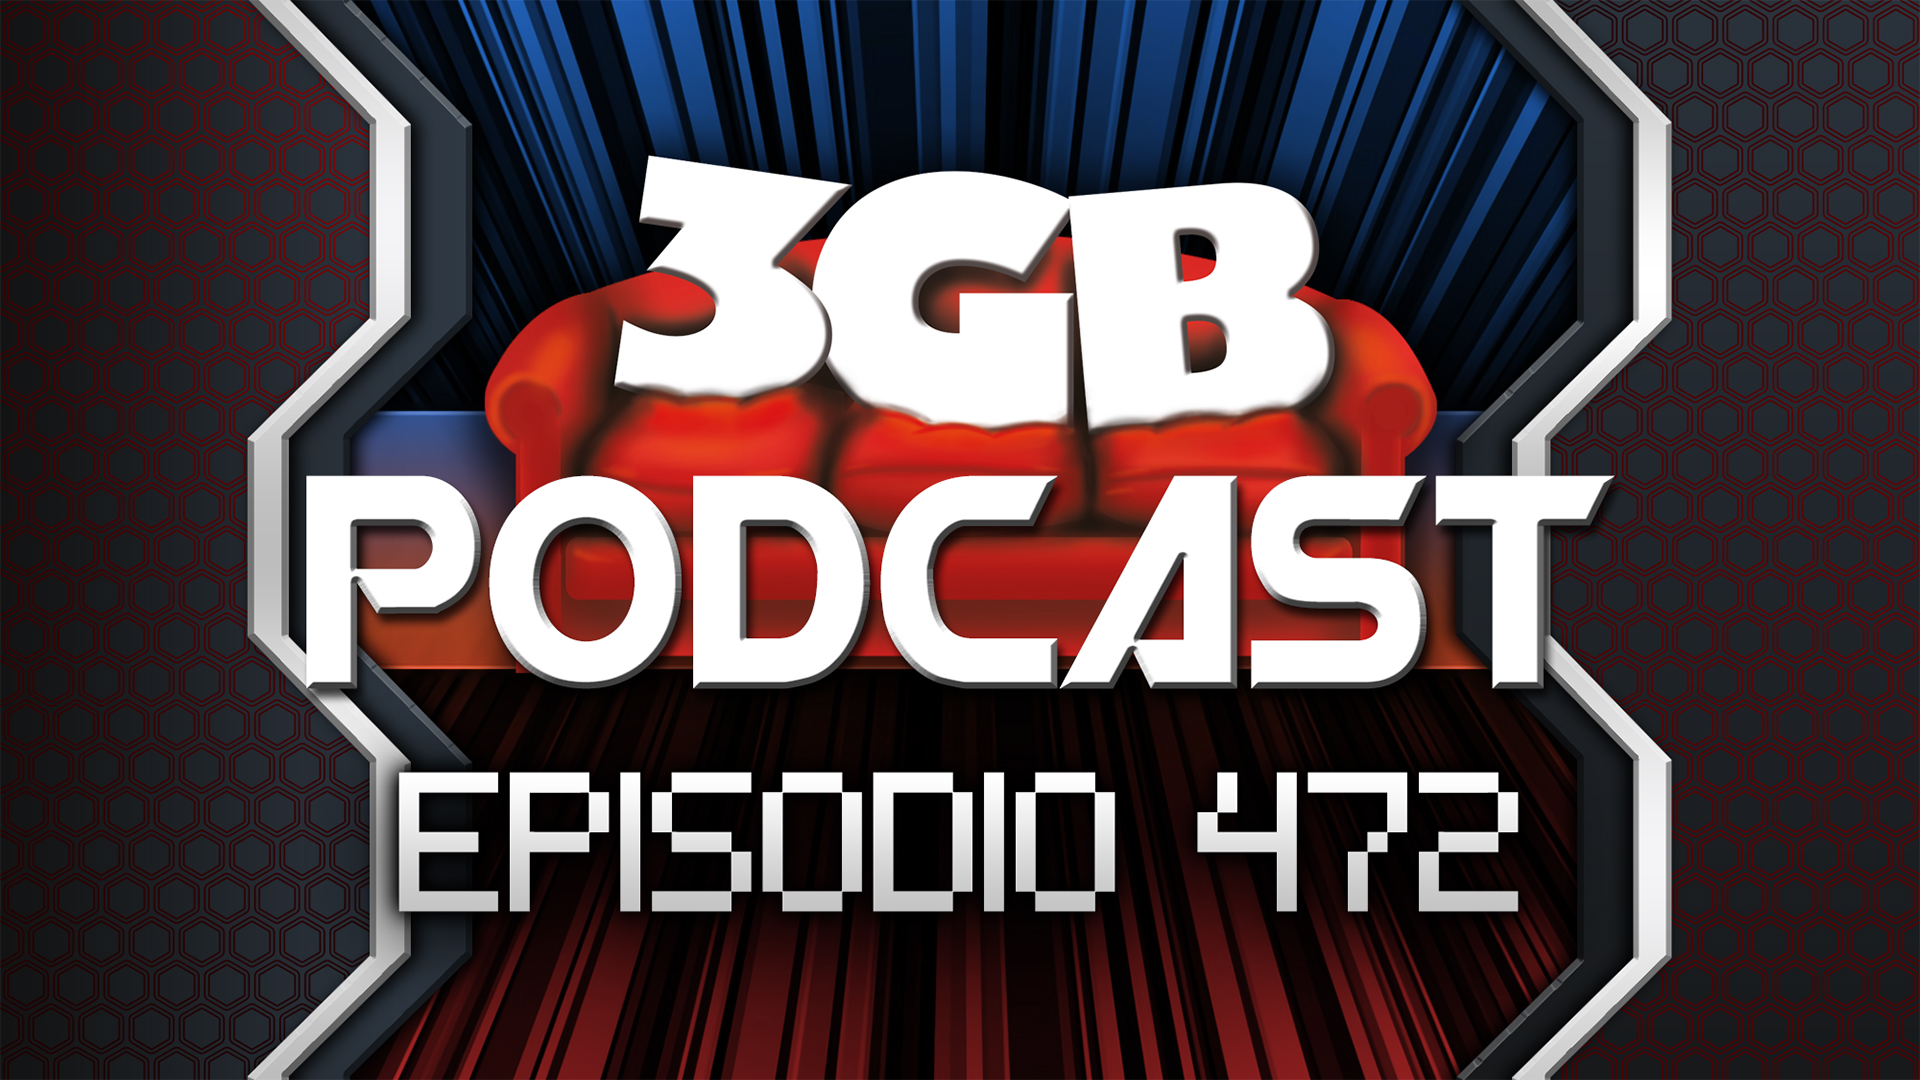 Podcast: Episodio 472, Square Enix Desatado